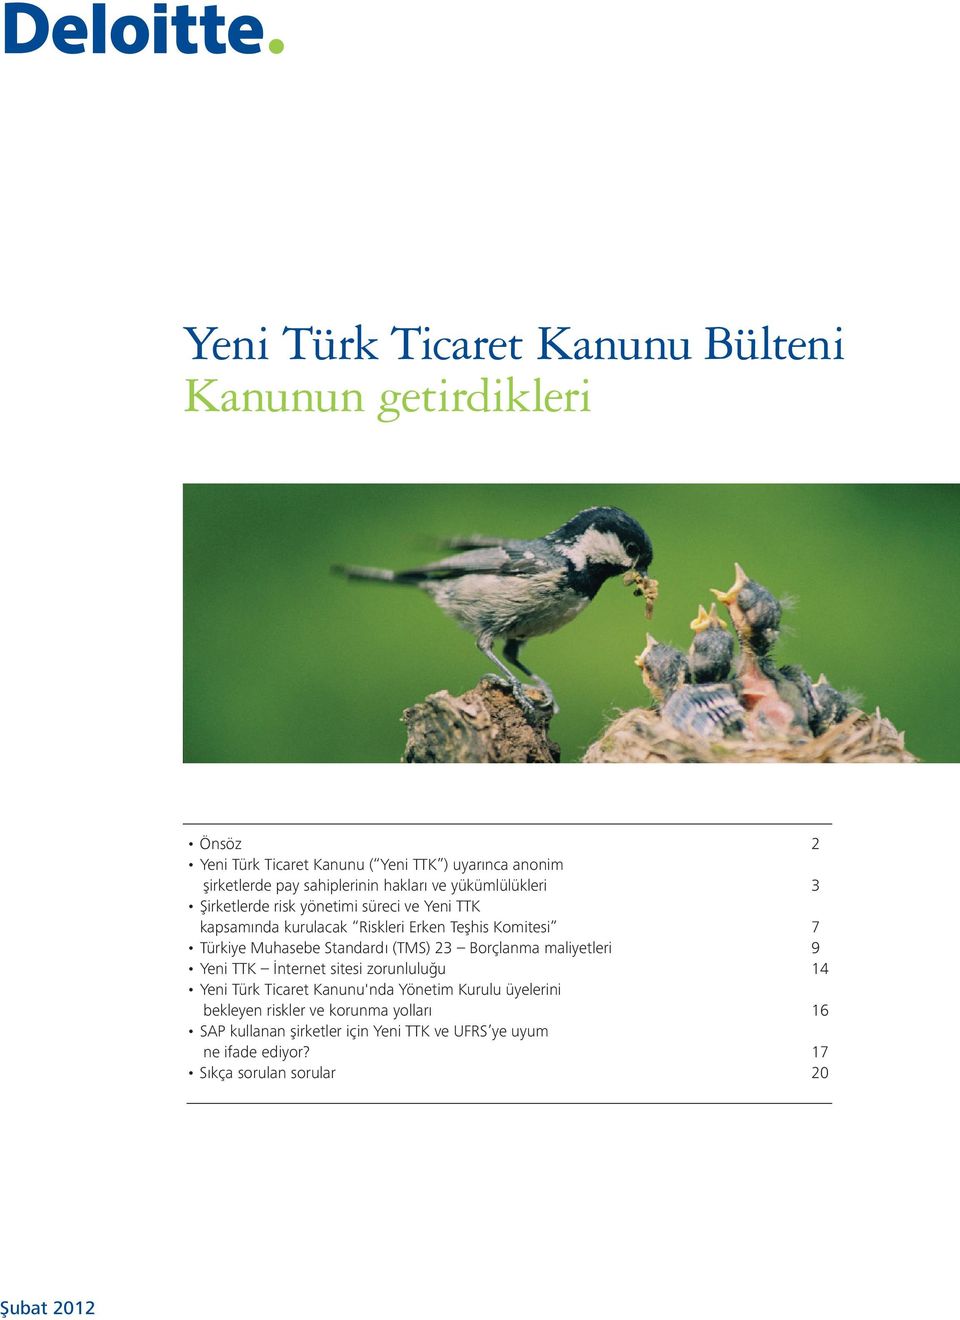 Türkiye Muhasebe Standardı (TMS) 23 Borçlanma maliyetleri 9 Yeni TTK İnternet sitesi zorunluluğu 14 Yeni Türk Ticaret Kanunu'nda Yönetim Kurulu